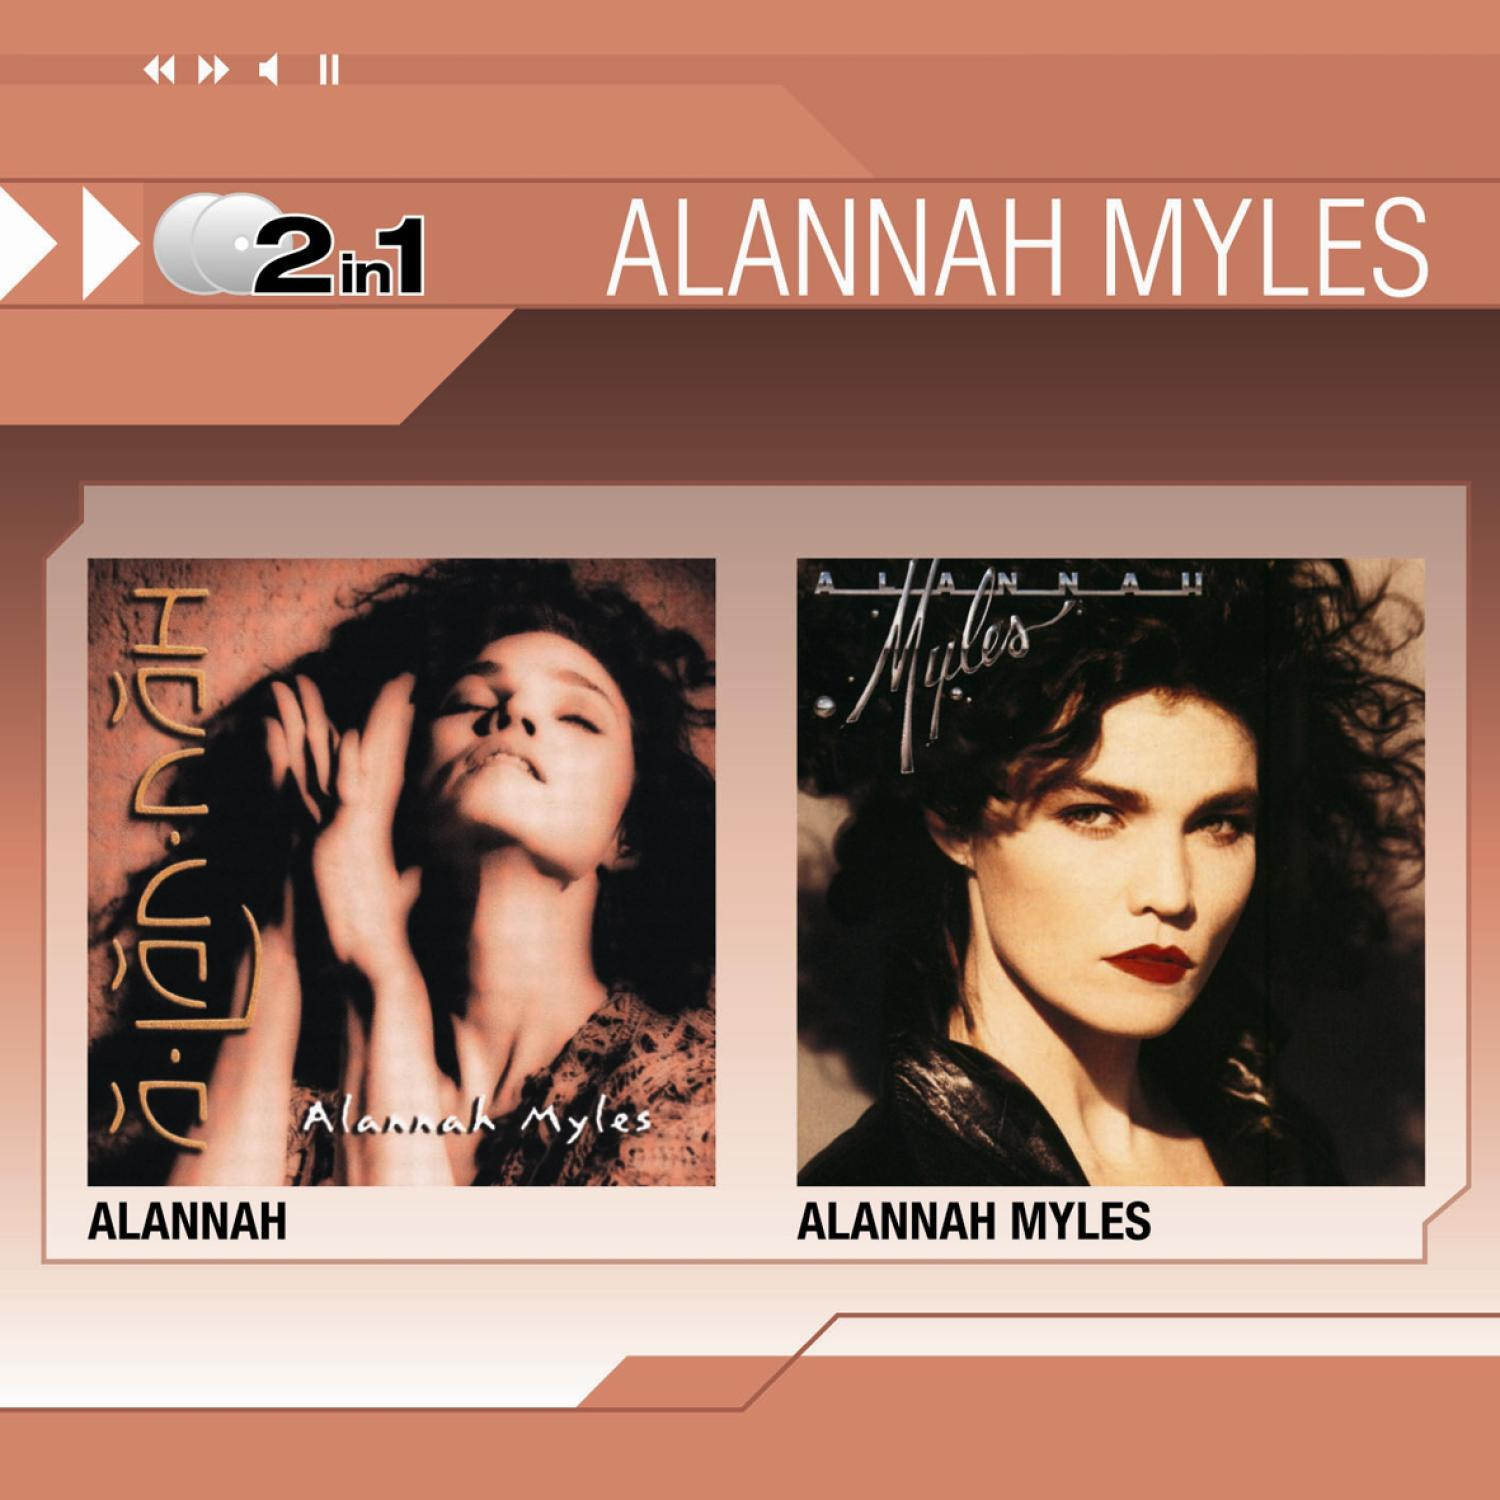 Alannah Myles (CD) Myles2in1 - - Alannah/Alannah